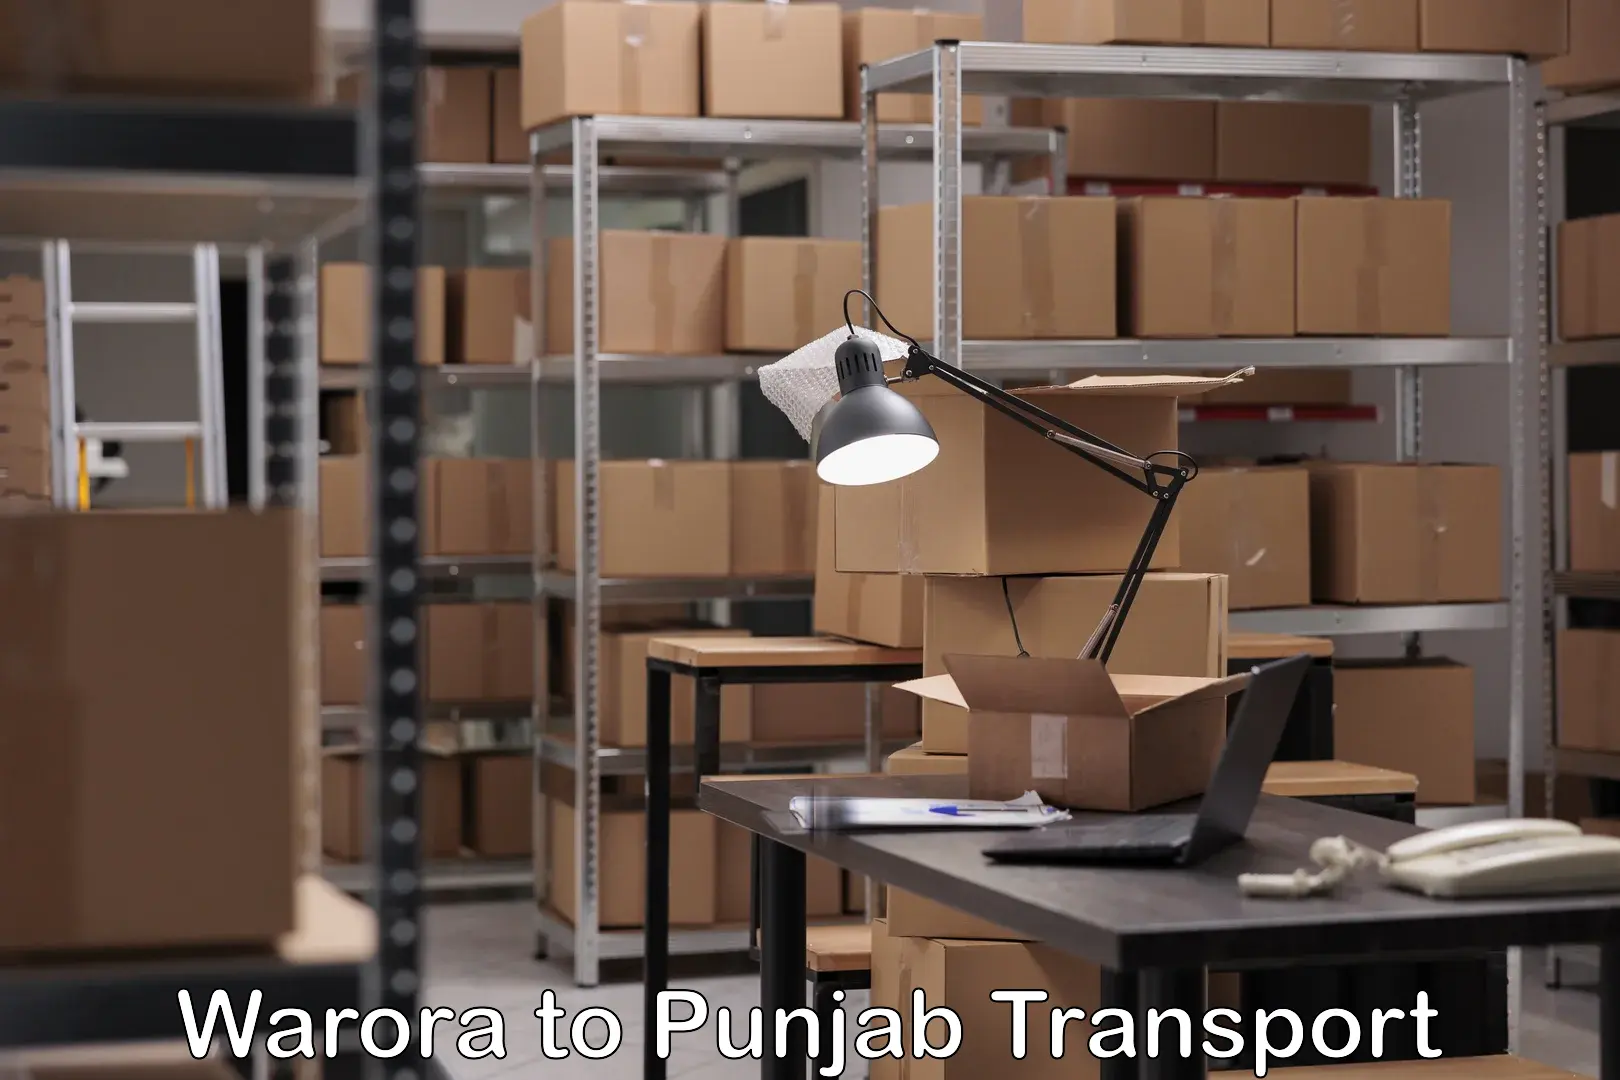 Vehicle transport services Warora to Punjab